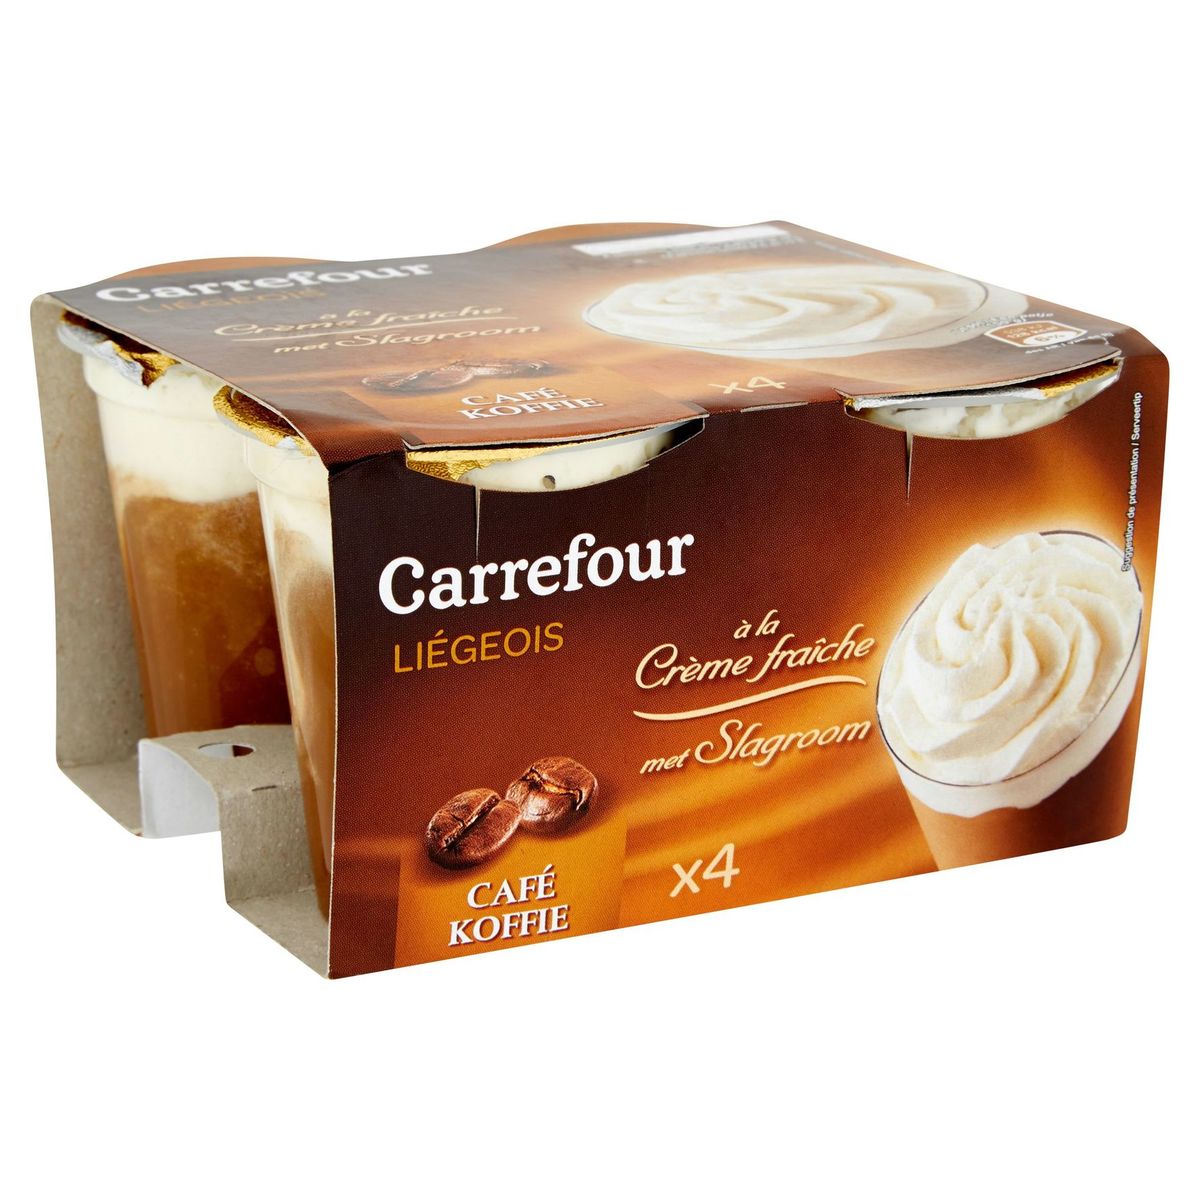 Carrefour Liégeois met Slagroom Koffie 4 x 100 g